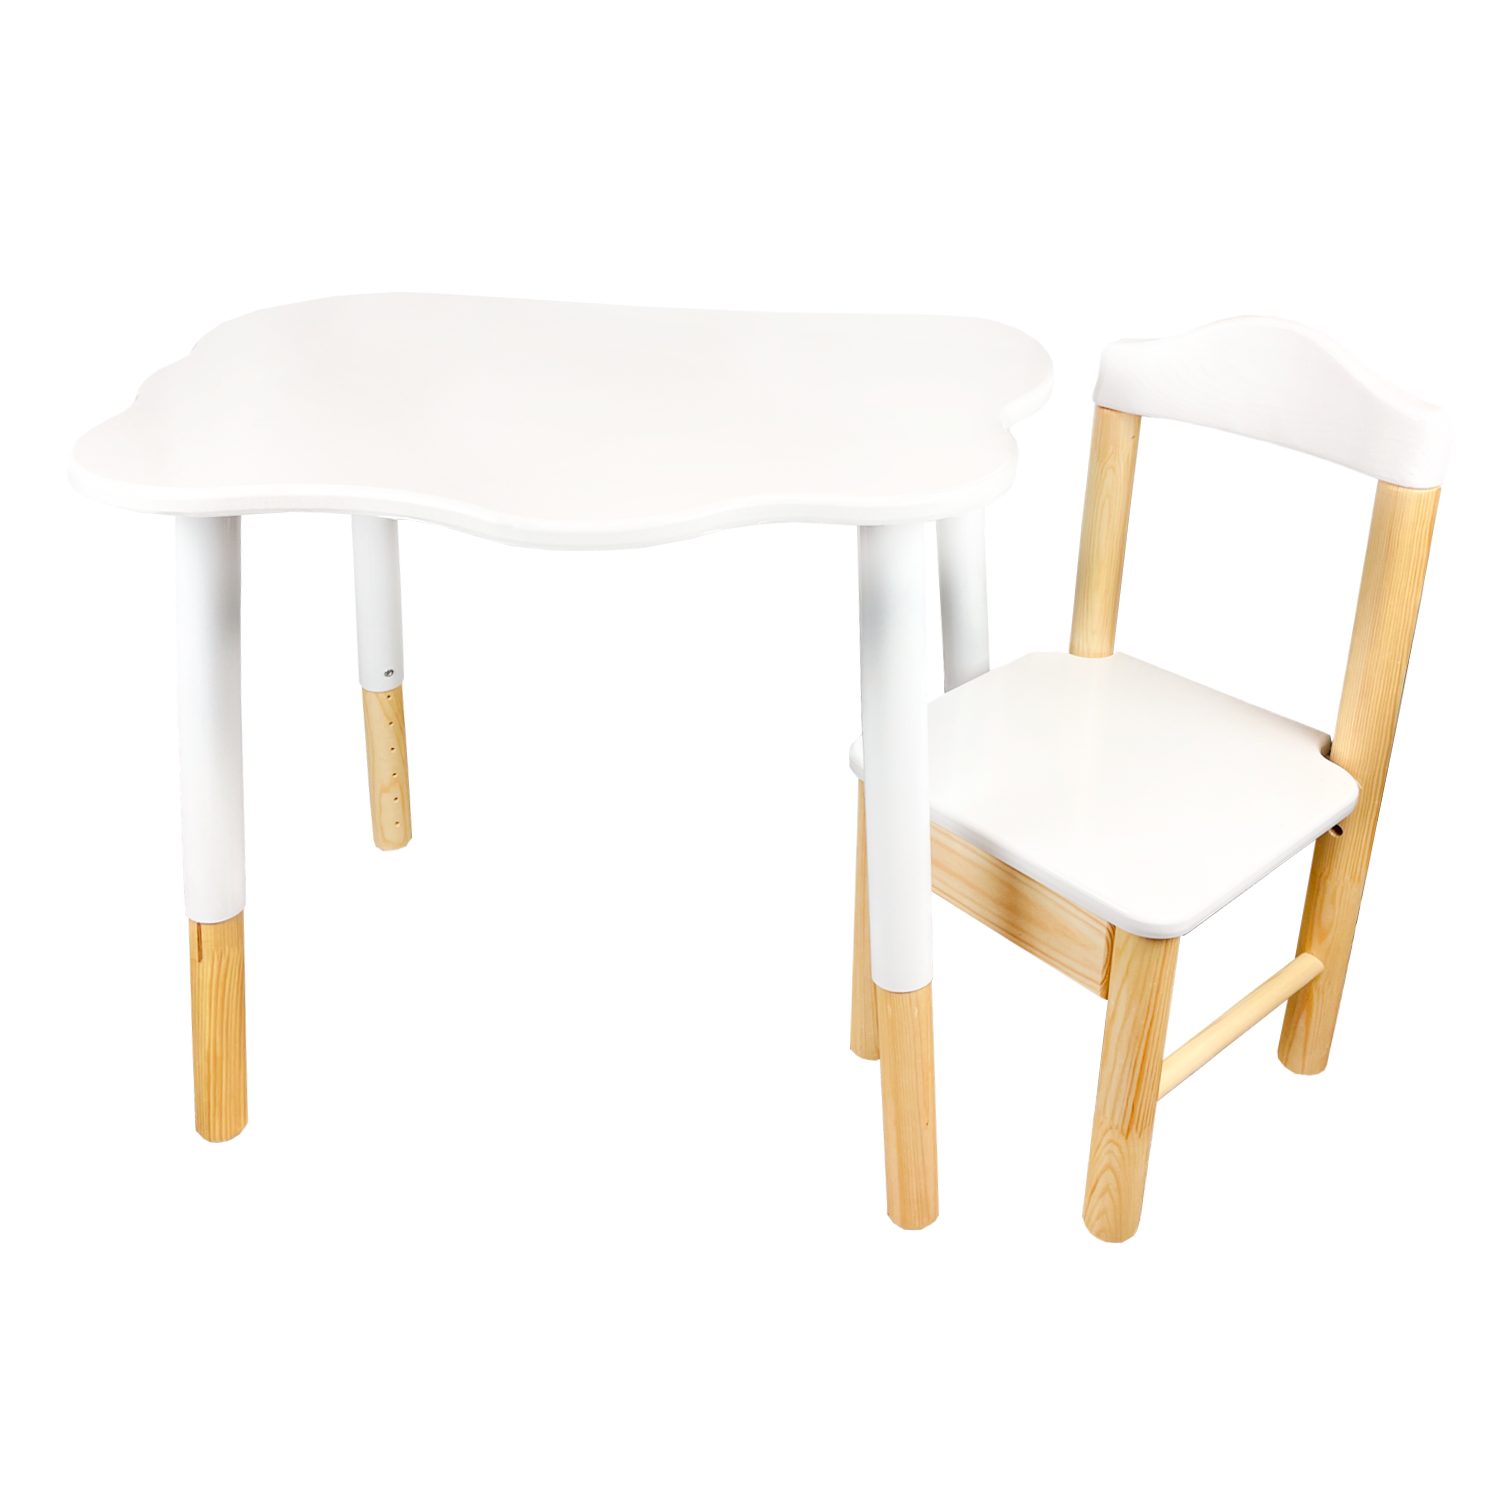 Набор мебели ЮЛАИН Стол прямоугольный 70х50 см и стул из дерева цвет белый - фото 10